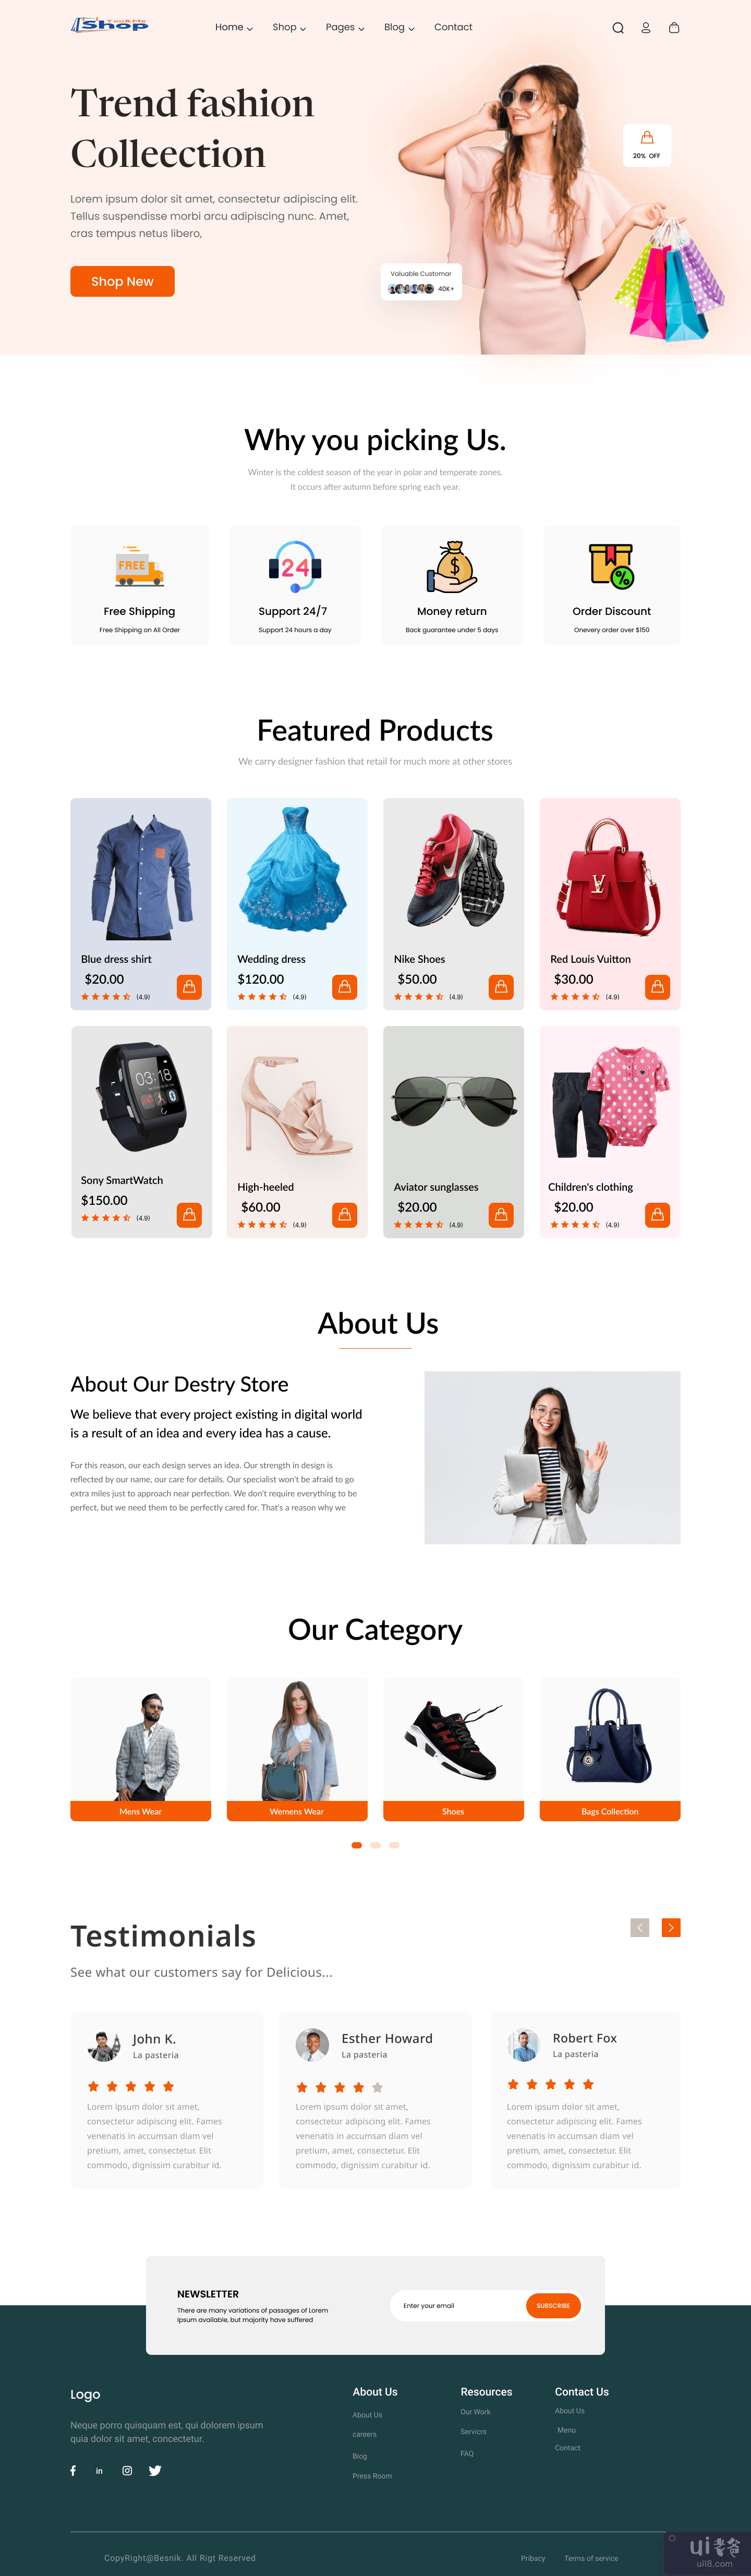 时尚电商登陆页面(Fashion E-commerce Landing Page)插图1